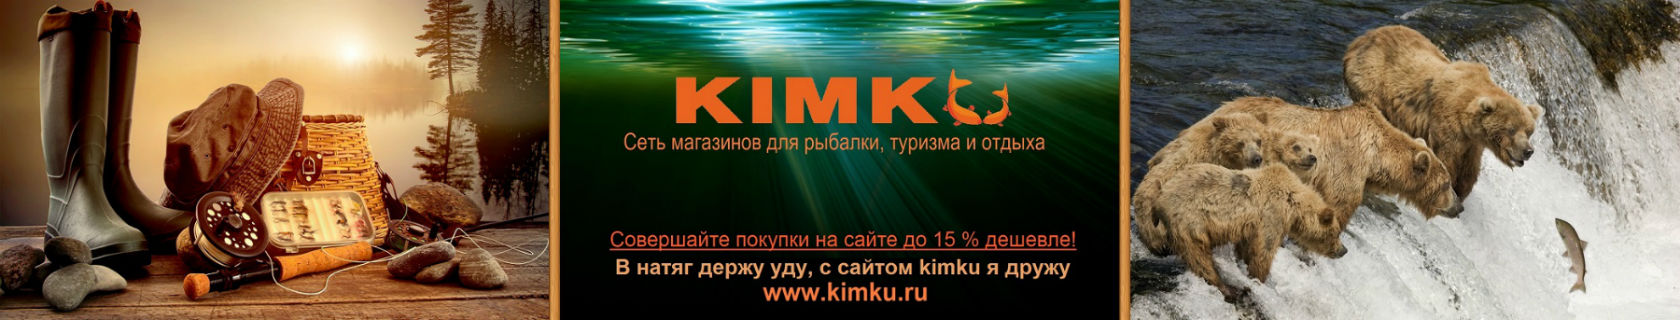 Рыболов Kimku